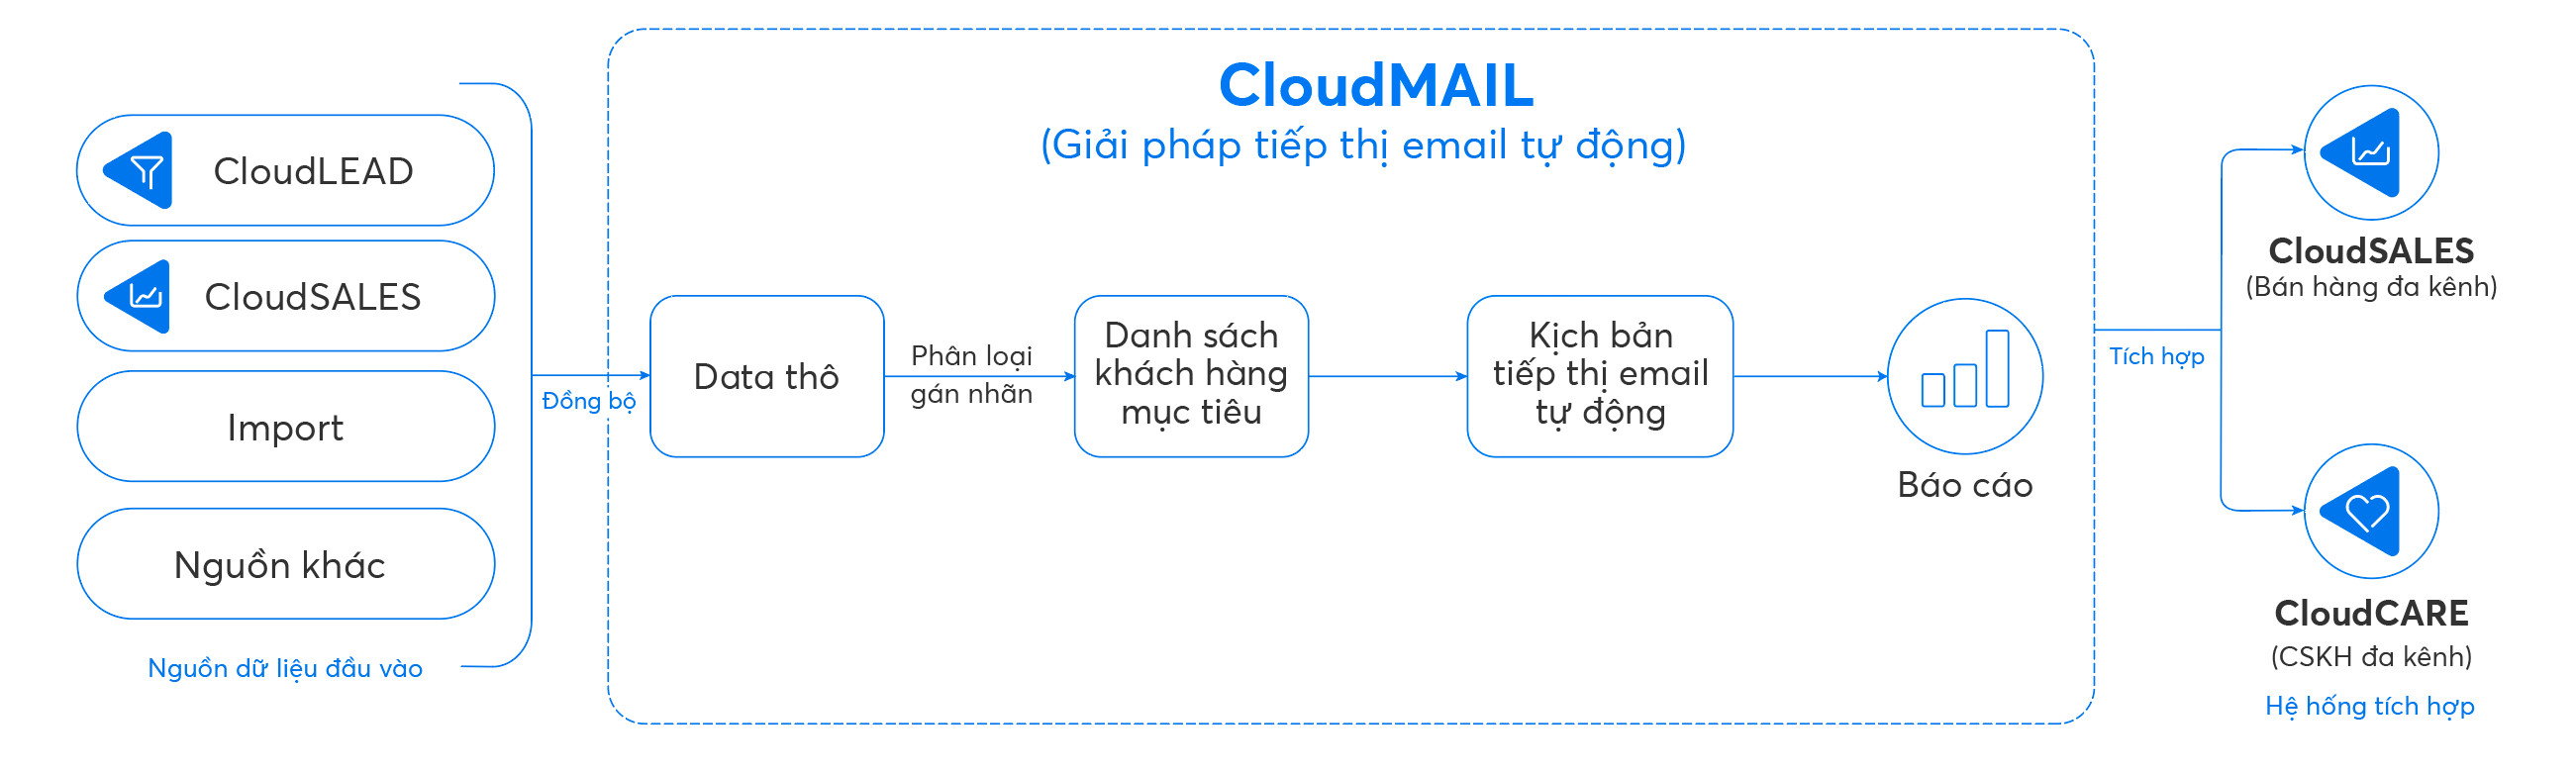 Quy trình tiếp thị email tự động bằng CloudMAIL